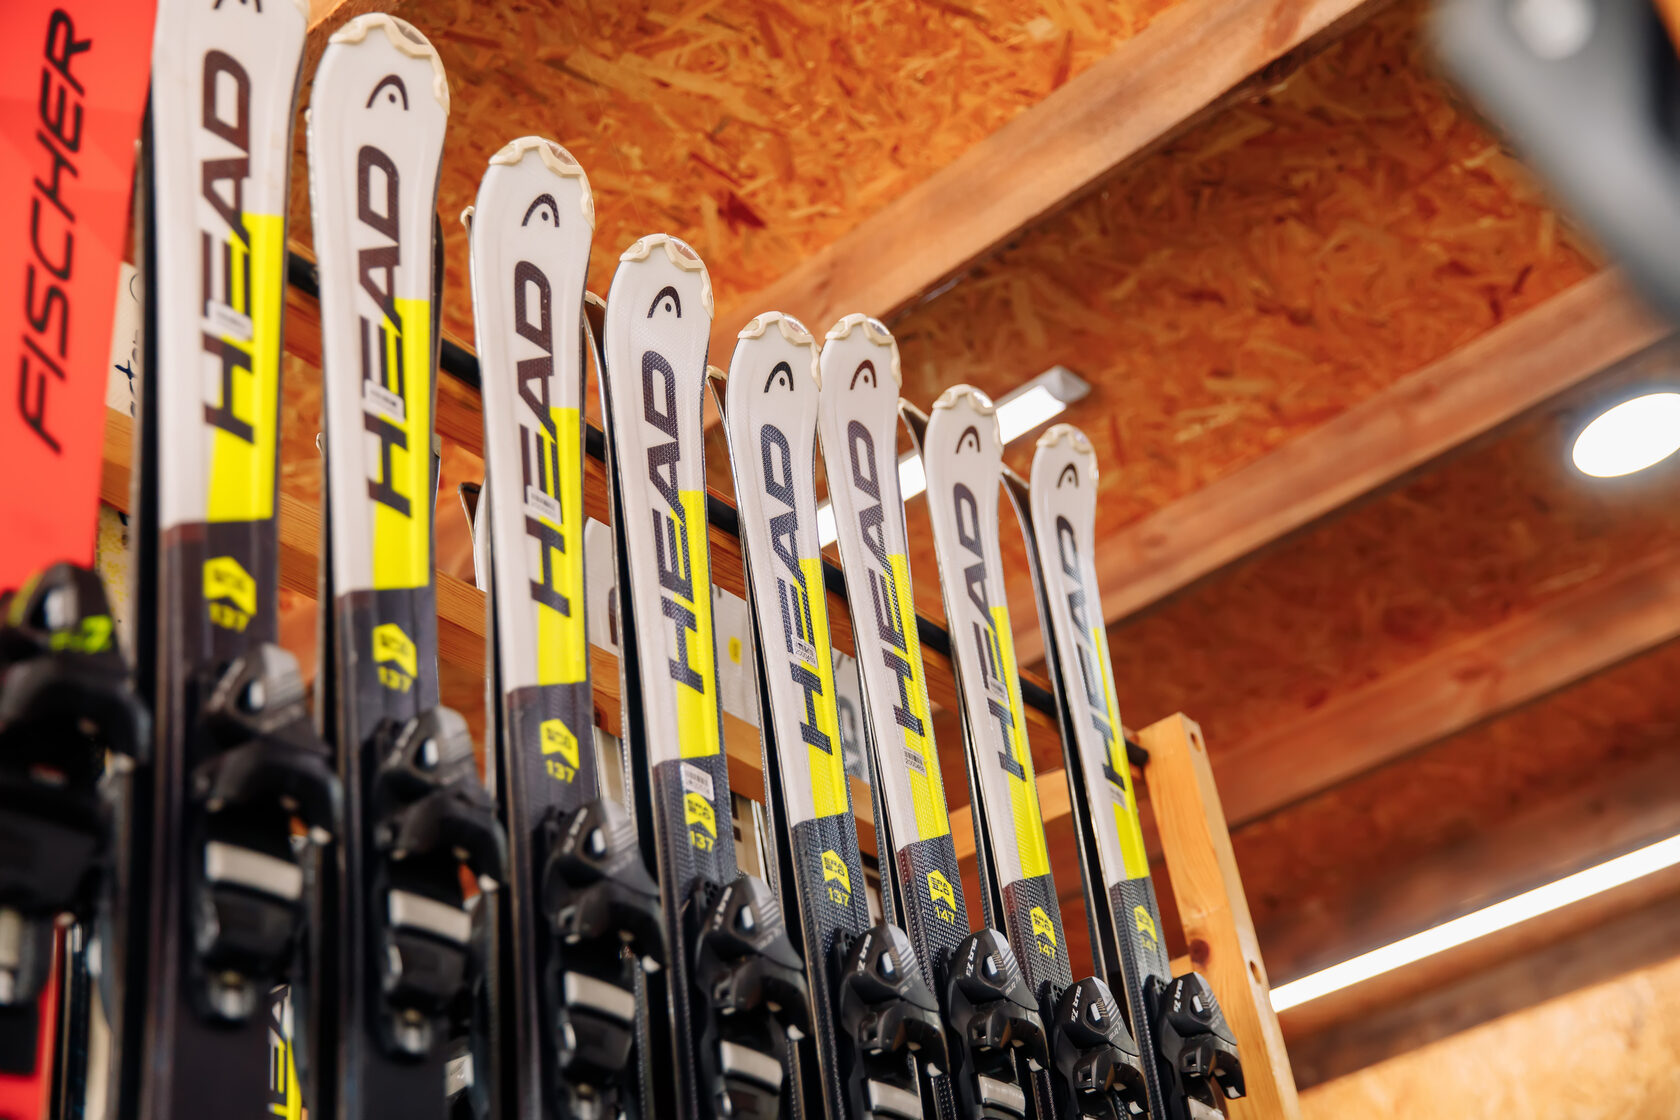 Взять лыжи в прокат. Прокат лыж. Лыжи напрокат. Прокат горнолыжного и сноубордического инвентаря. Технология проката горнолыжного инвентаря.